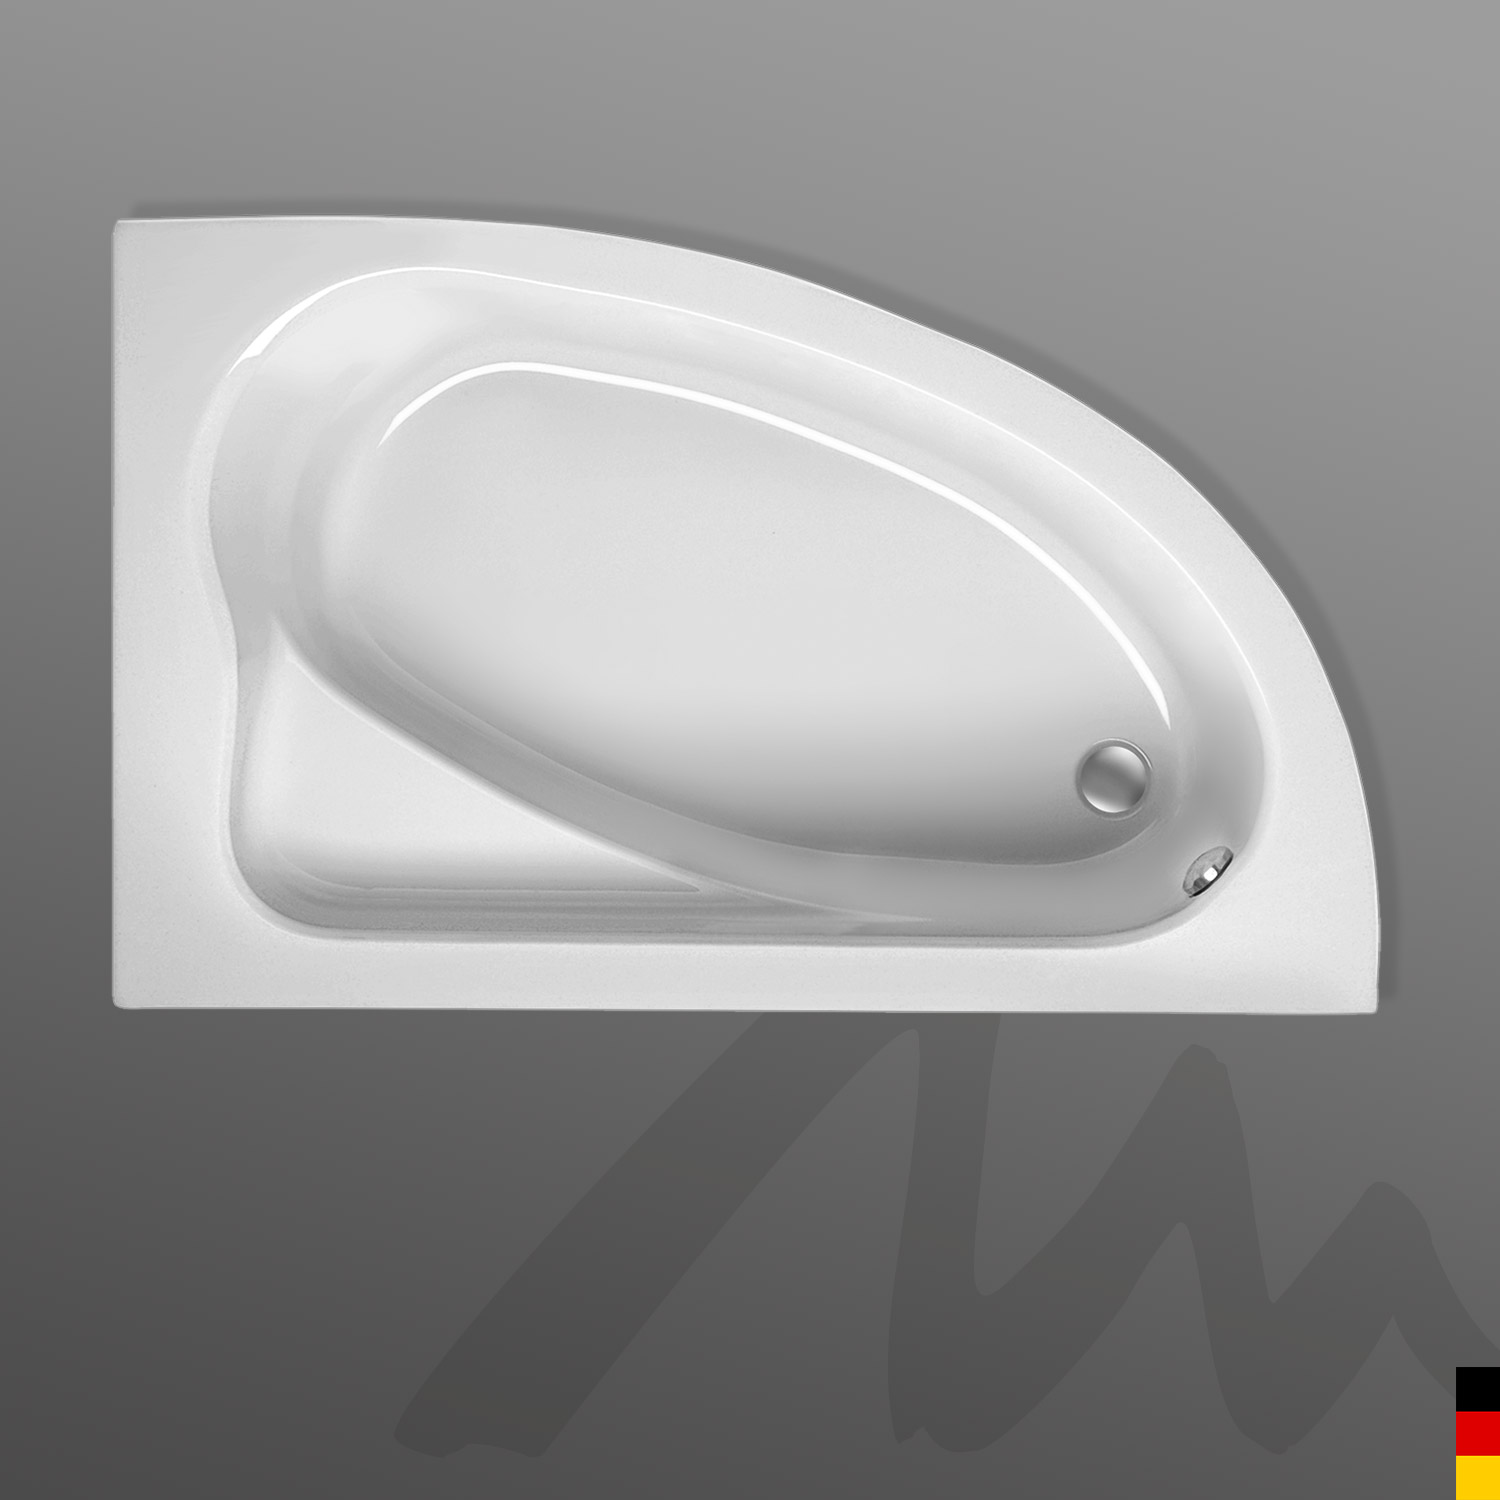 Mauersberger Badewanne Eckwanne Aspera 160/100 Ausführung links  160x100x41cm  Farbe:weiß Weiß mit Schürze Links